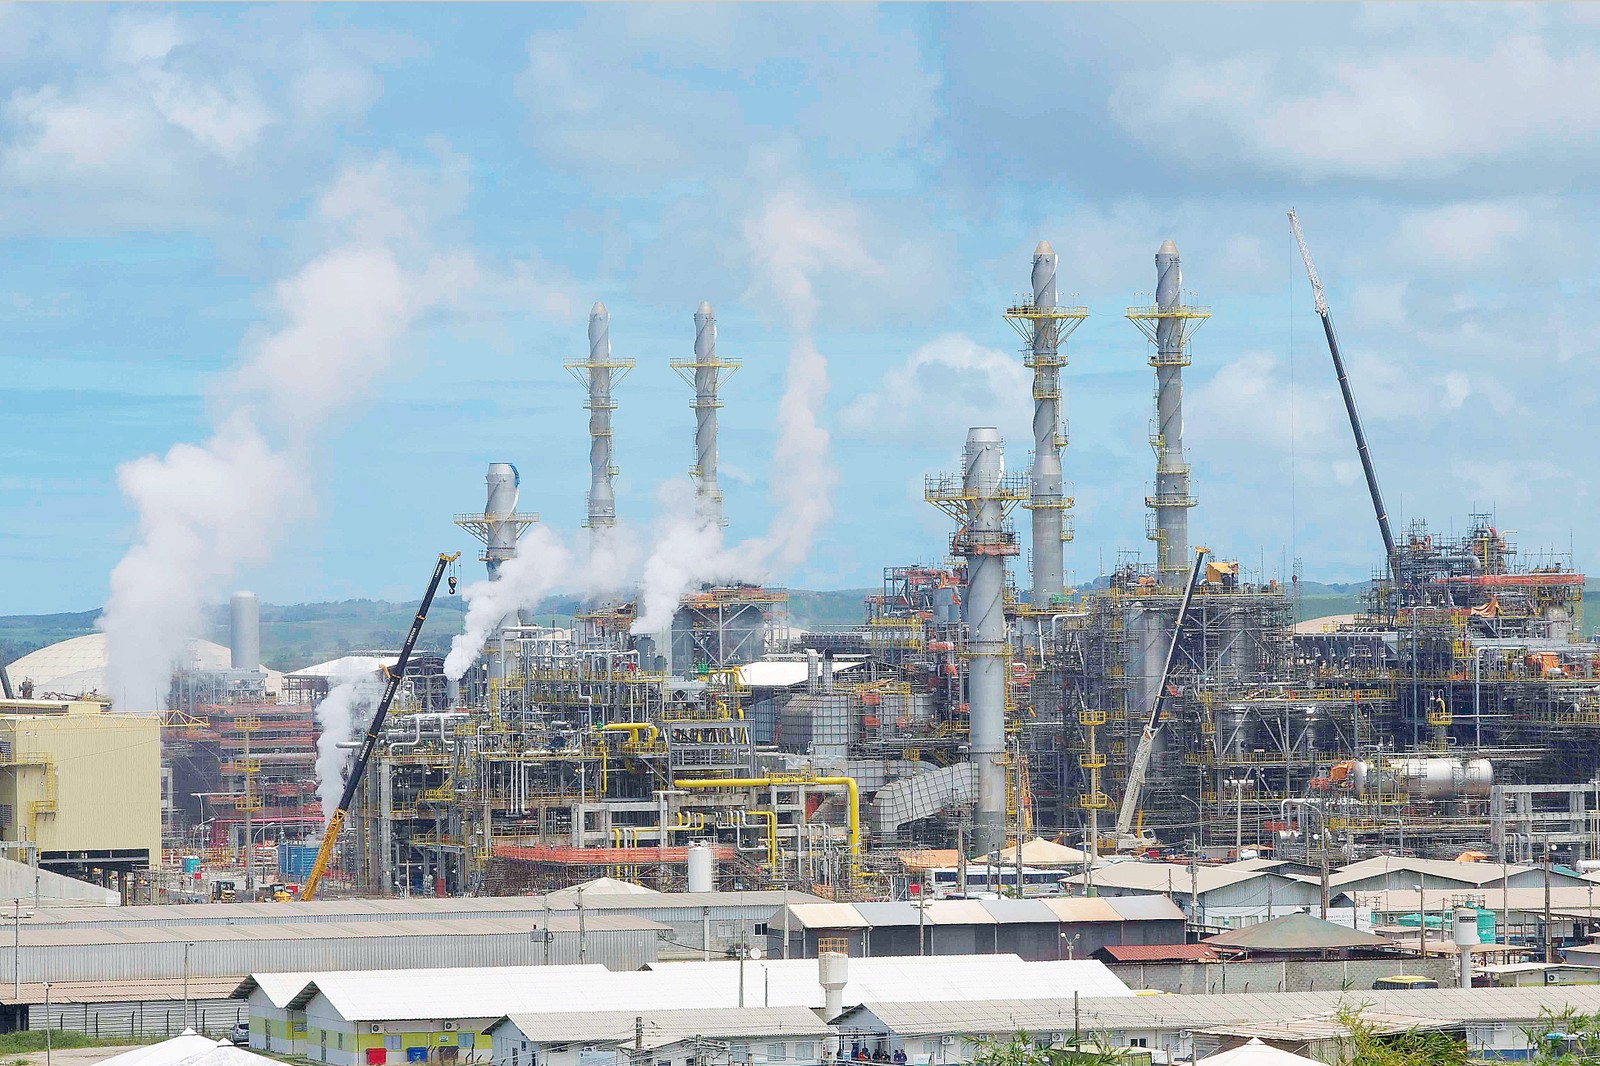 Em julho, a Petrobras começou a receber propostas para a venda de quatro refinarias, entre elas a Refinaria de Abreu e Lima, em Pernambuco (foto)Agência O Globo